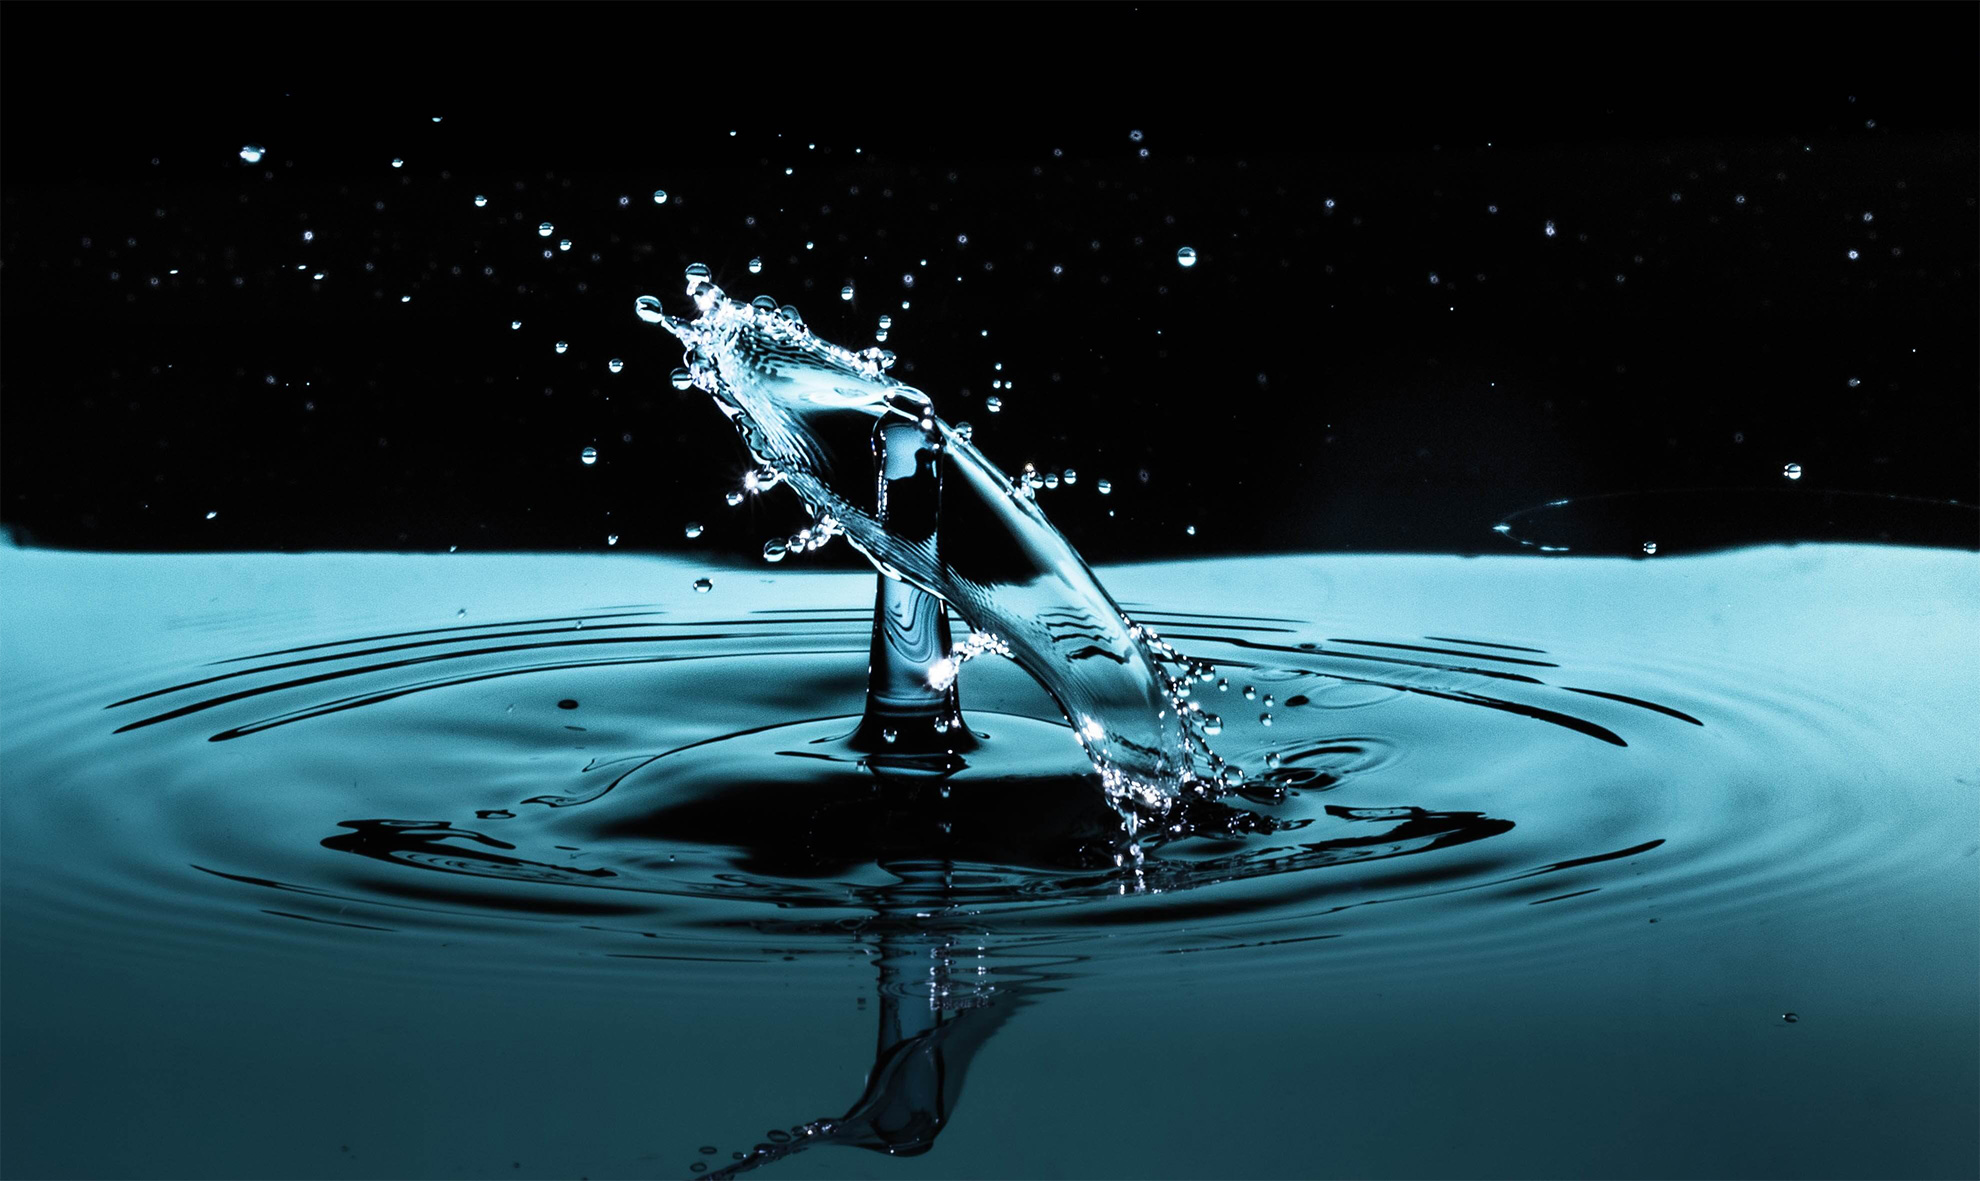 水滴落下 Water Drop Photography のスプラッシュを撮影するには 水滴落下 Water Drop Photography のスプラッシュを撮影するには 株式会社ノビテック